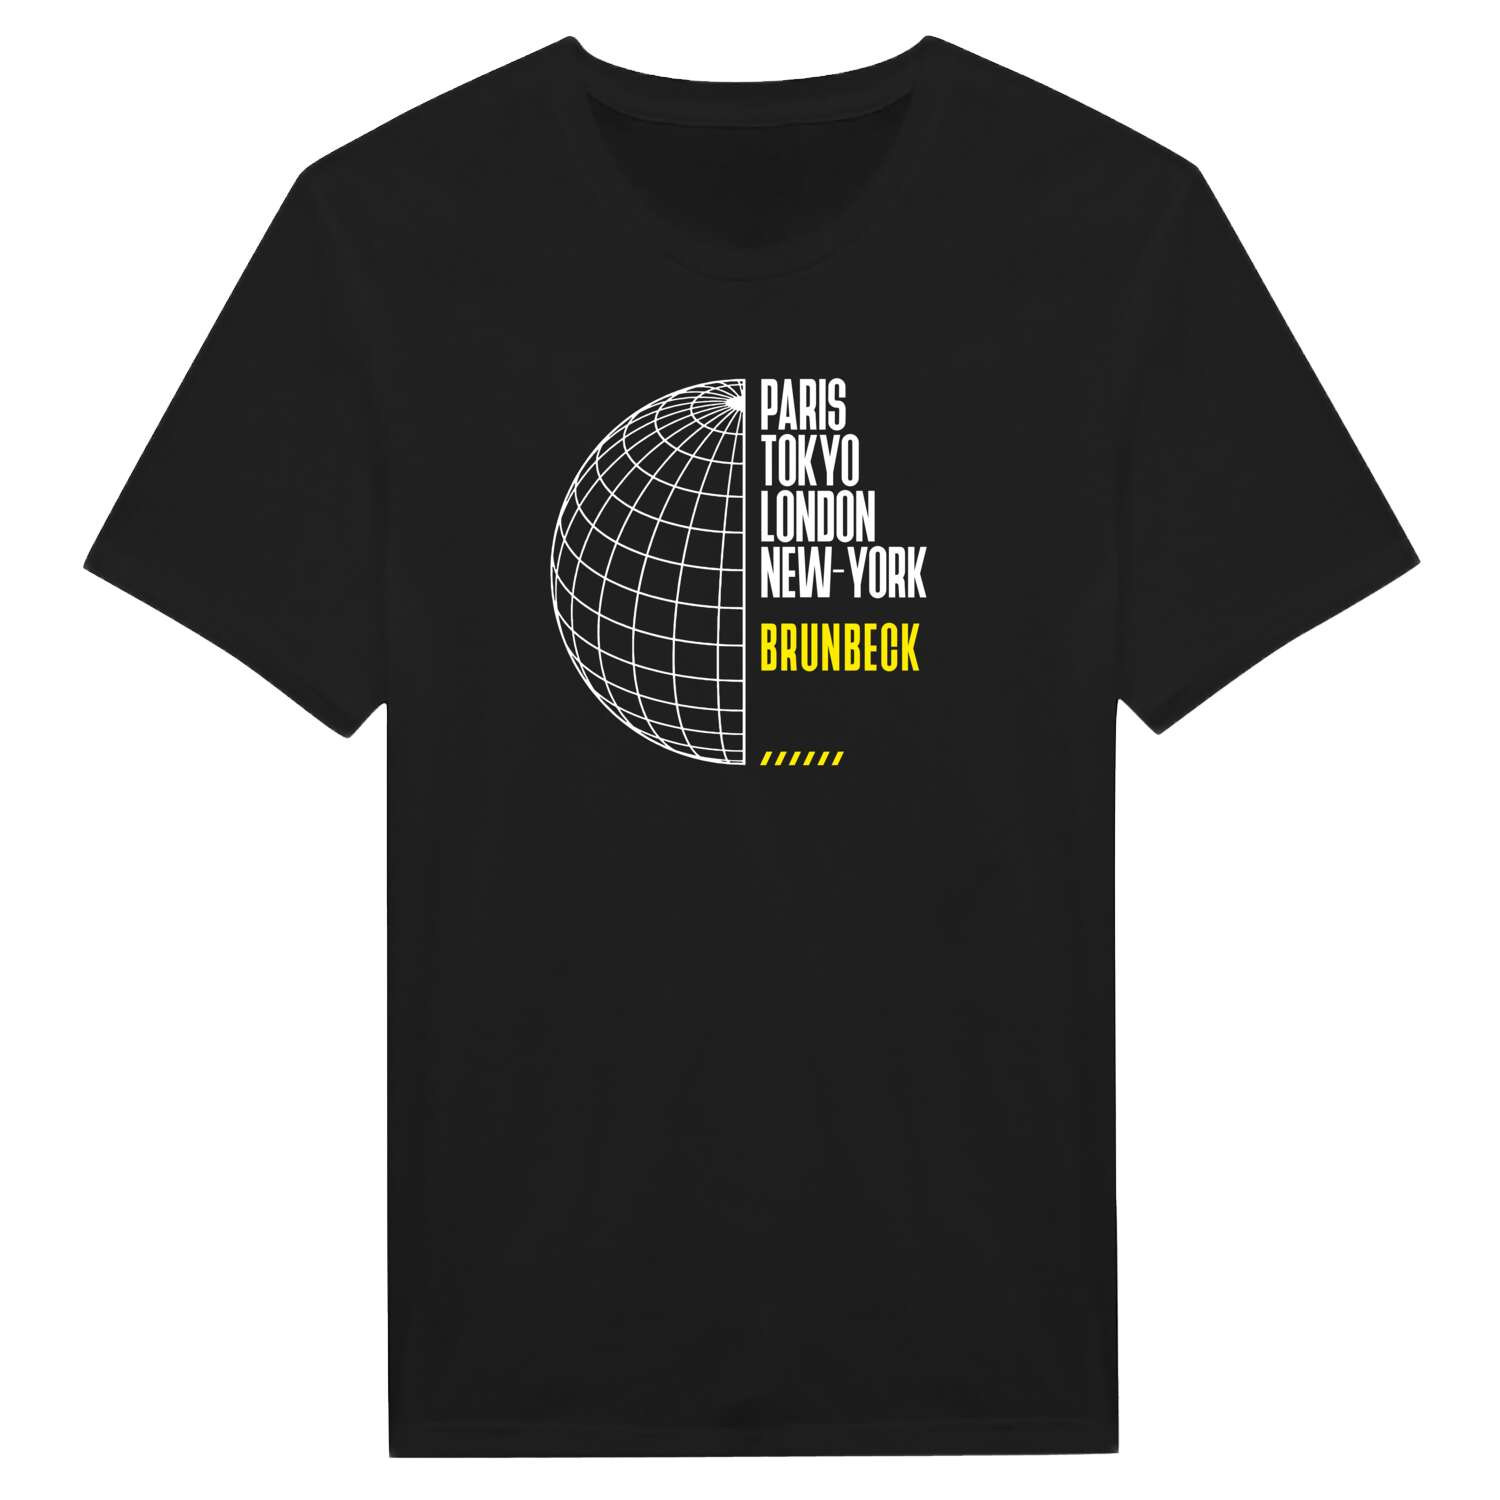 Brunbeck T-Shirt »Paris Tokyo London«